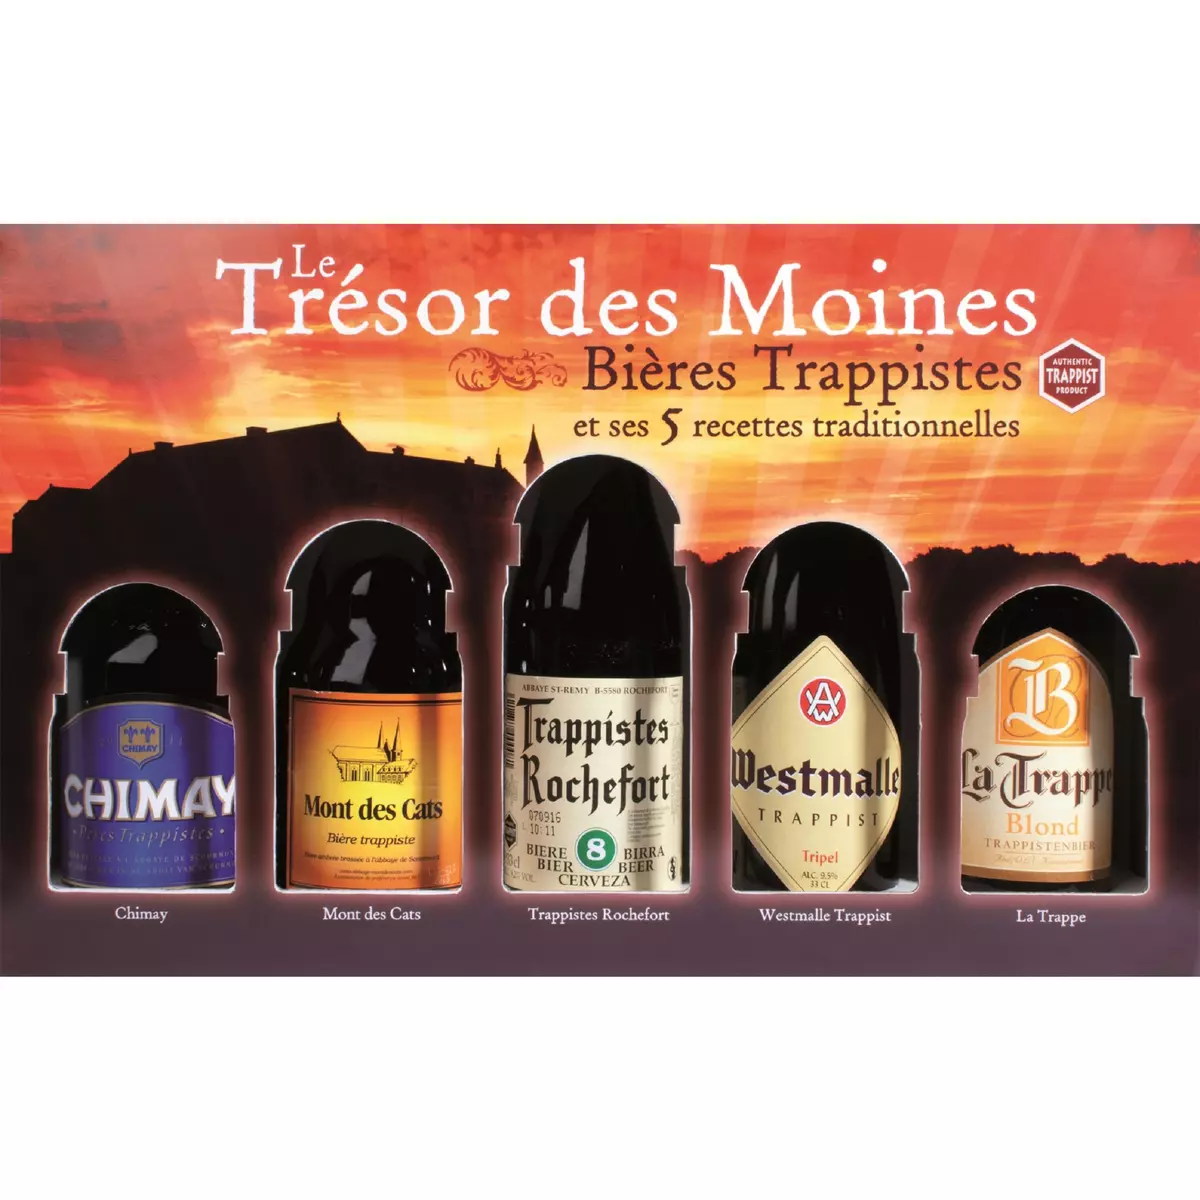 LE TRESOR DES MOINES Coffret bières Trésor des Moines 8.36% 5x33cl